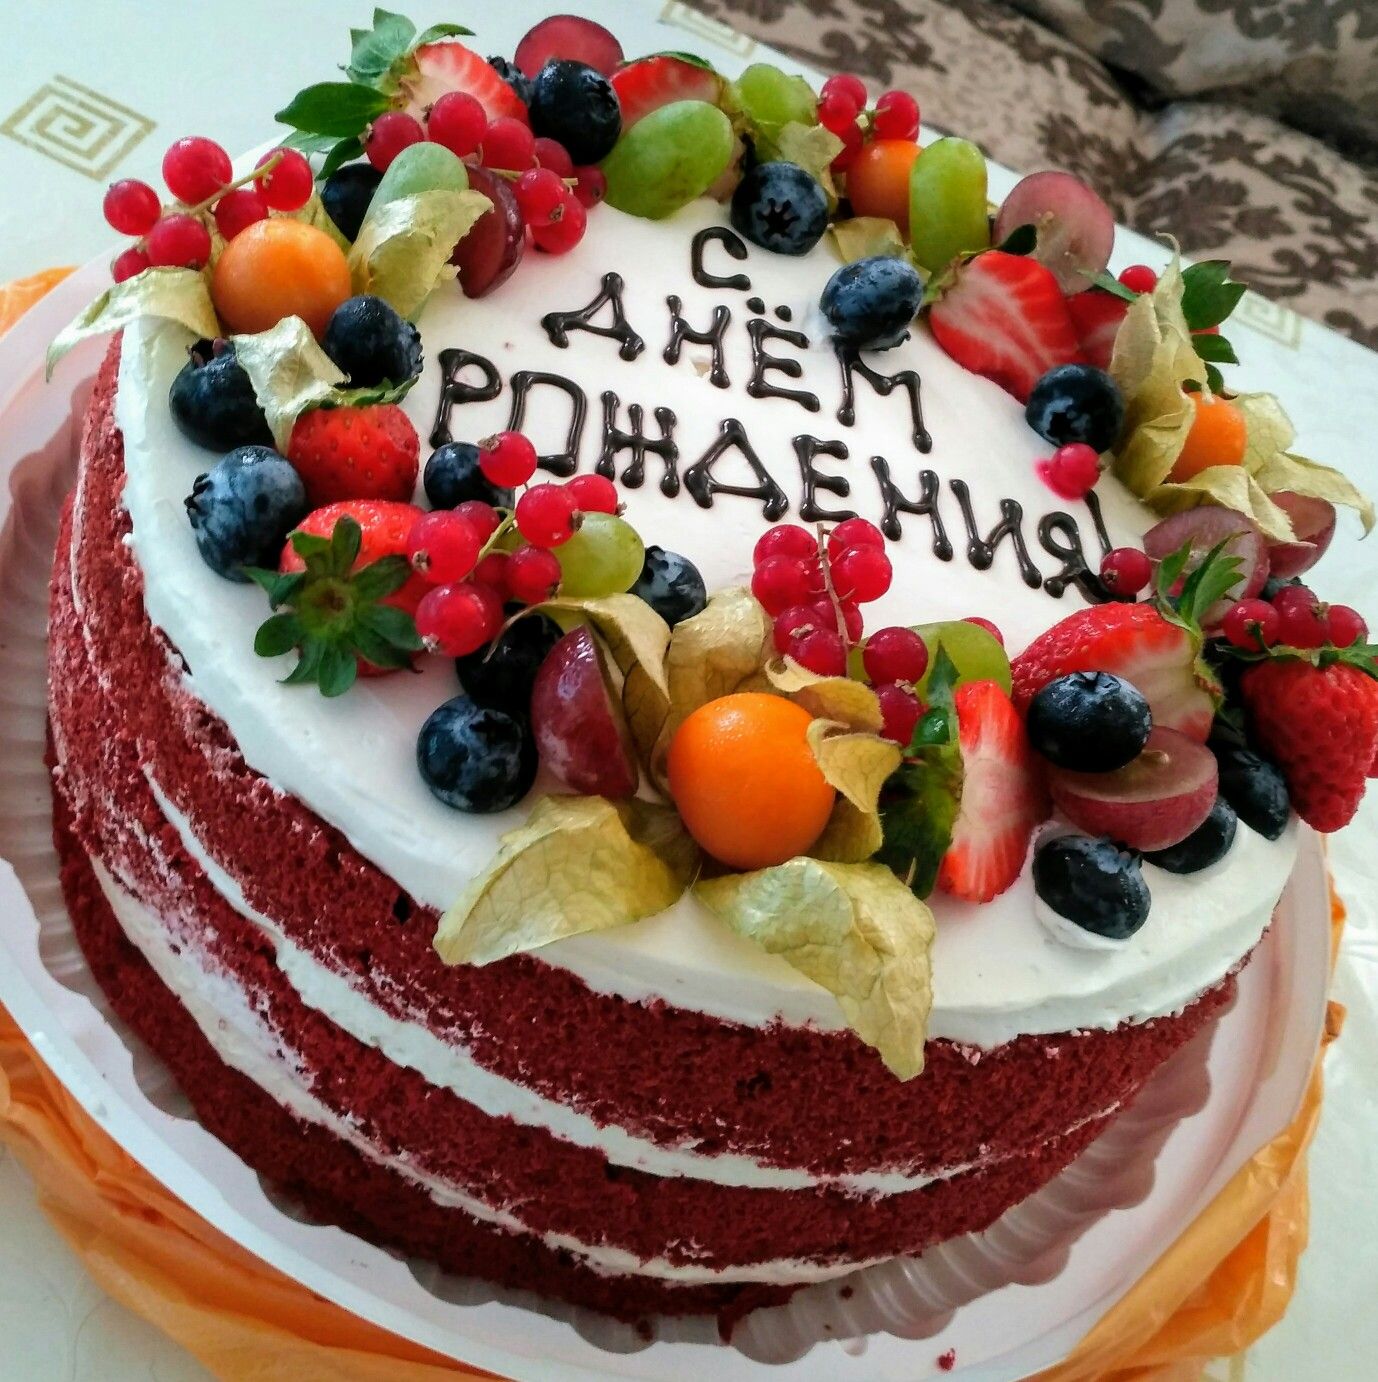 Красивые тортики на день рождения